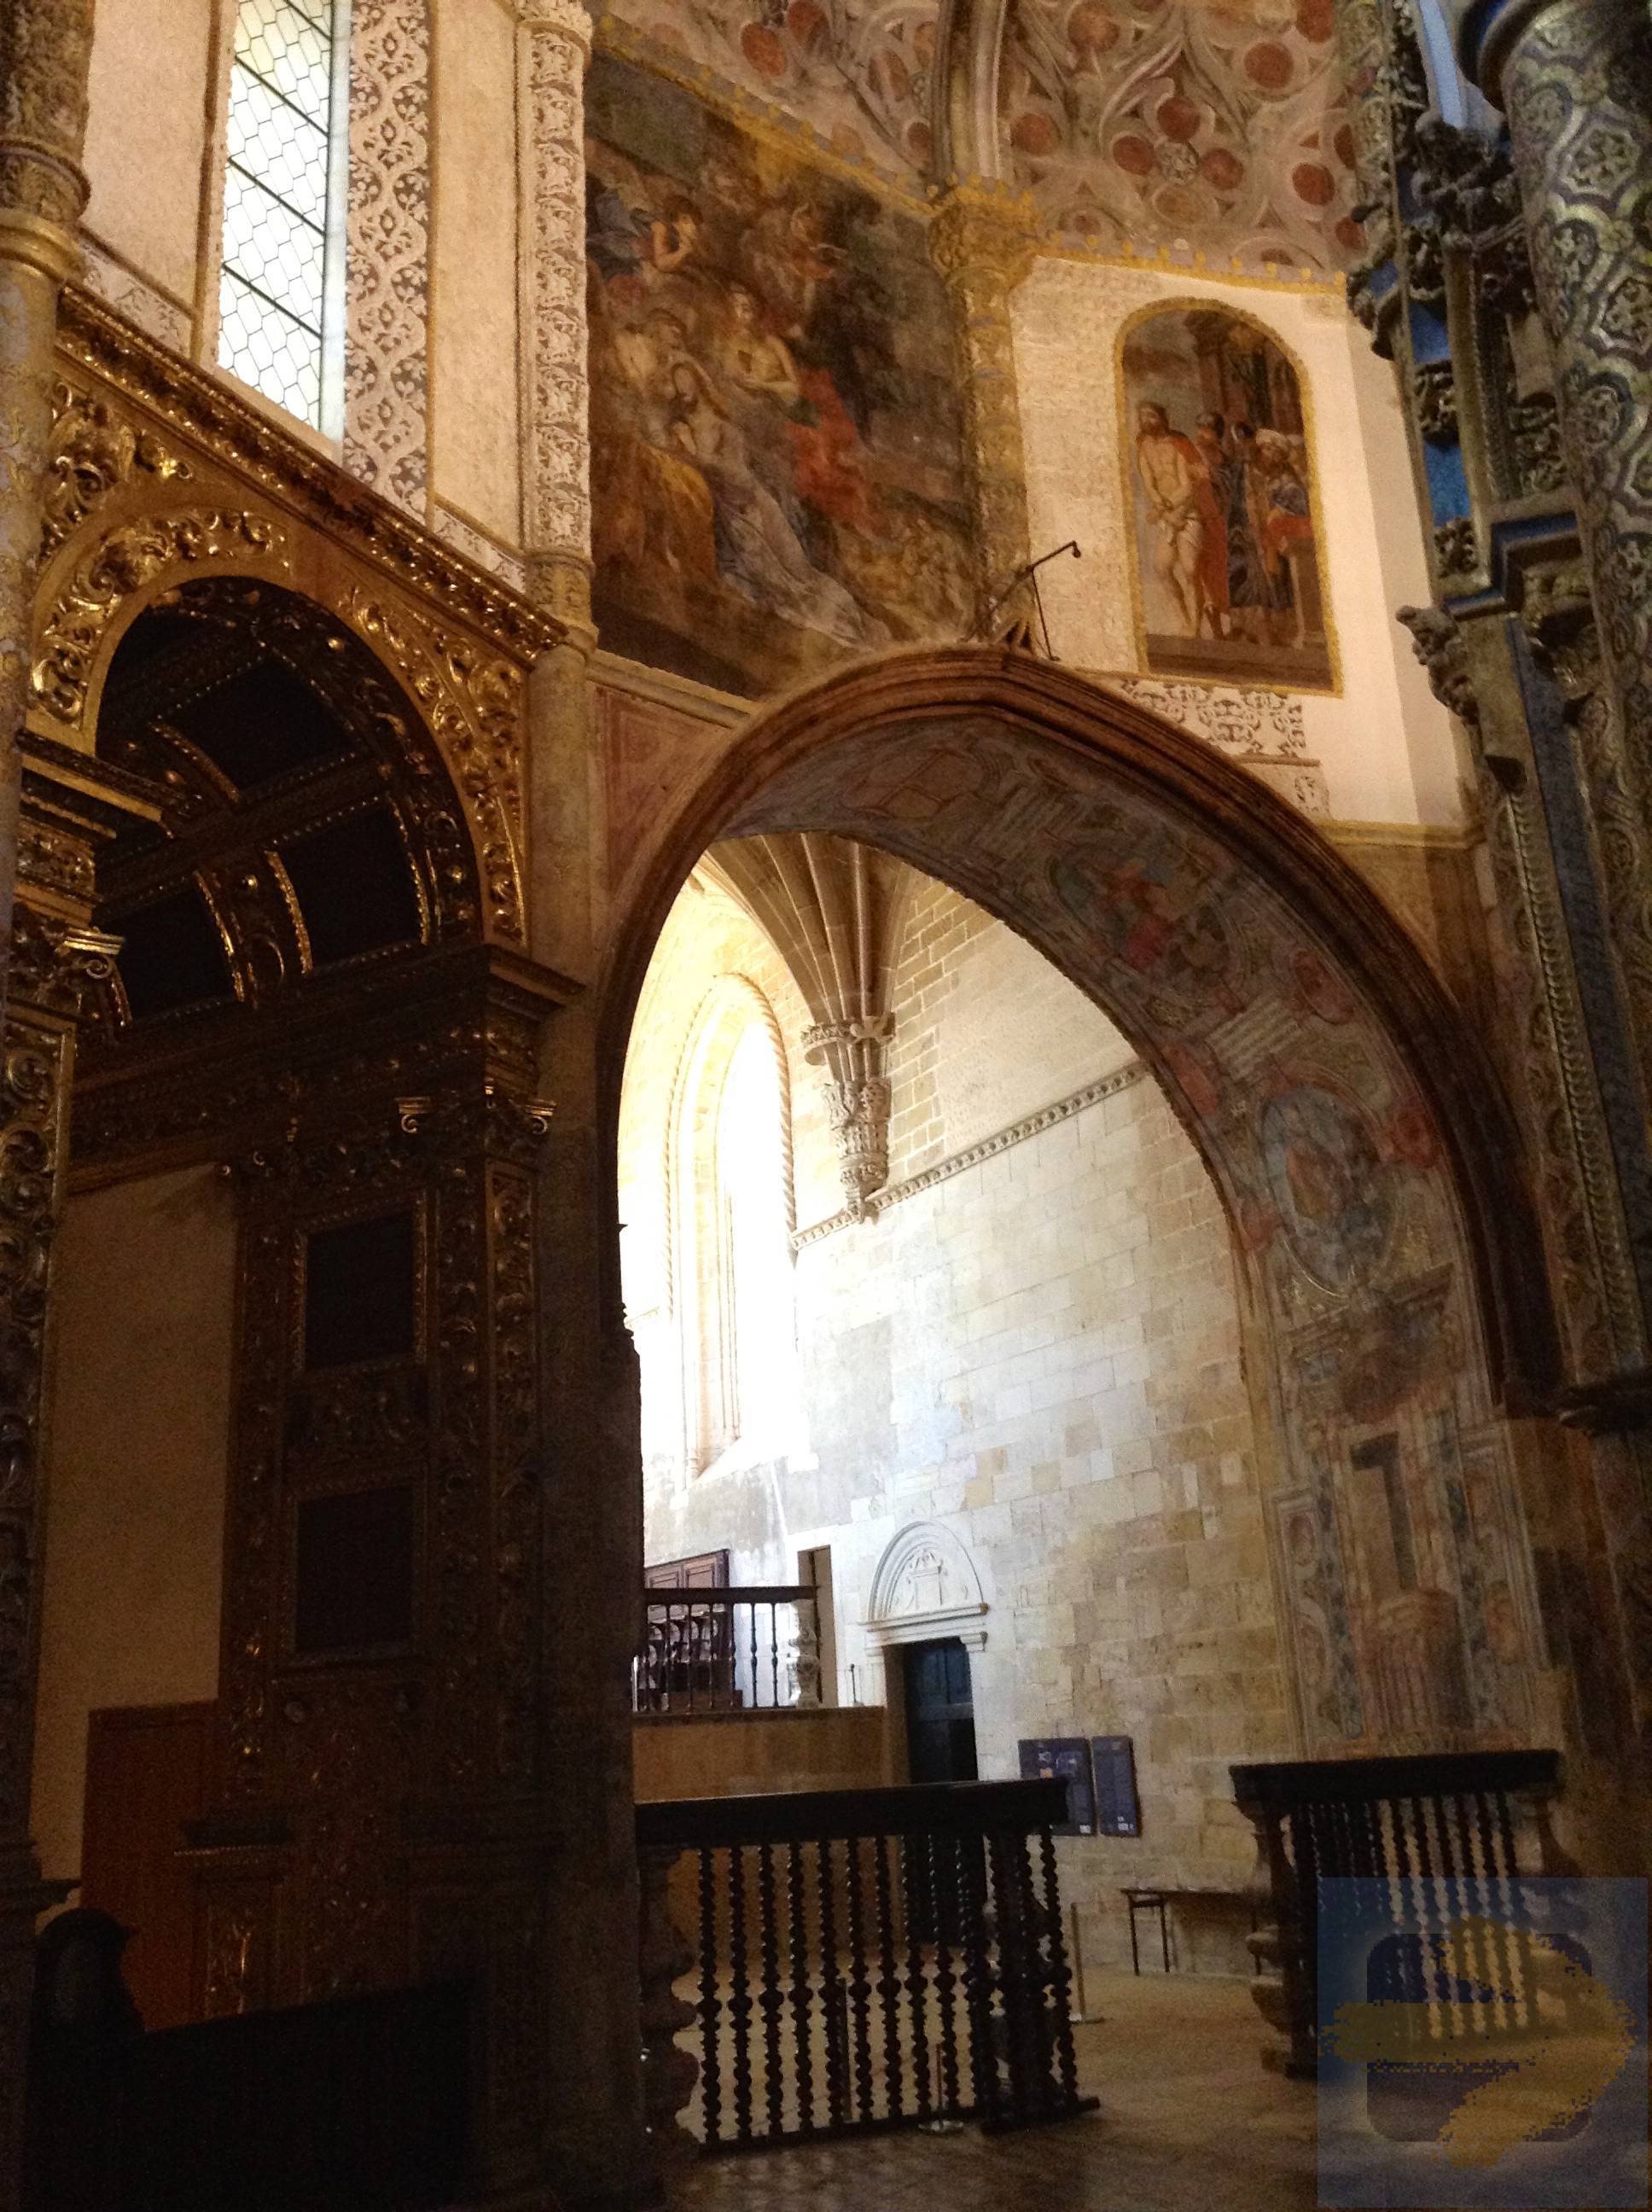 Tomar - inside Convento do christo